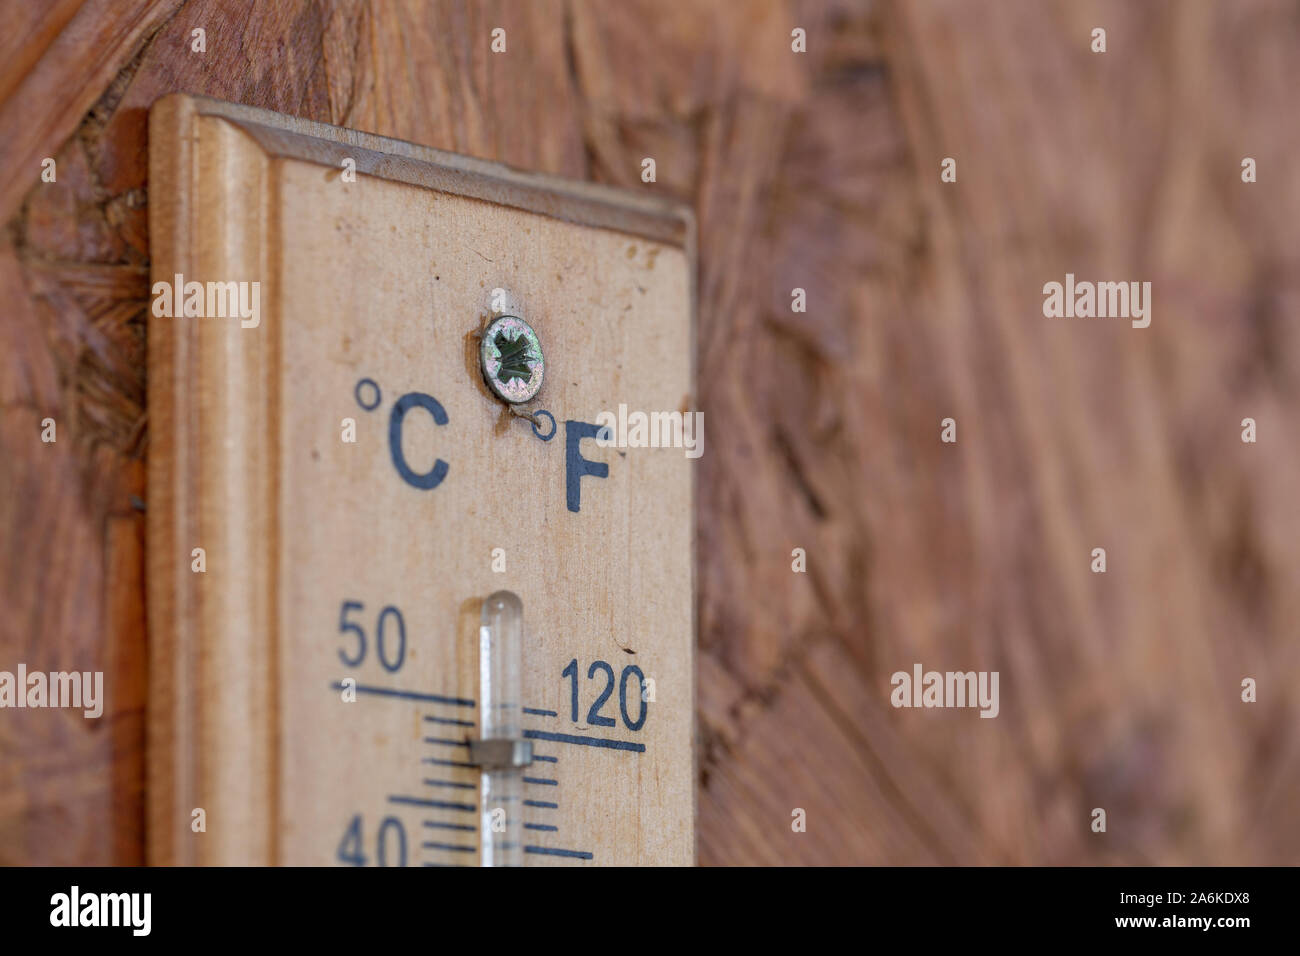 Wärme Temperatur Thermometer auf der hölzernen Wand außerhalb des Hauses Stockfoto